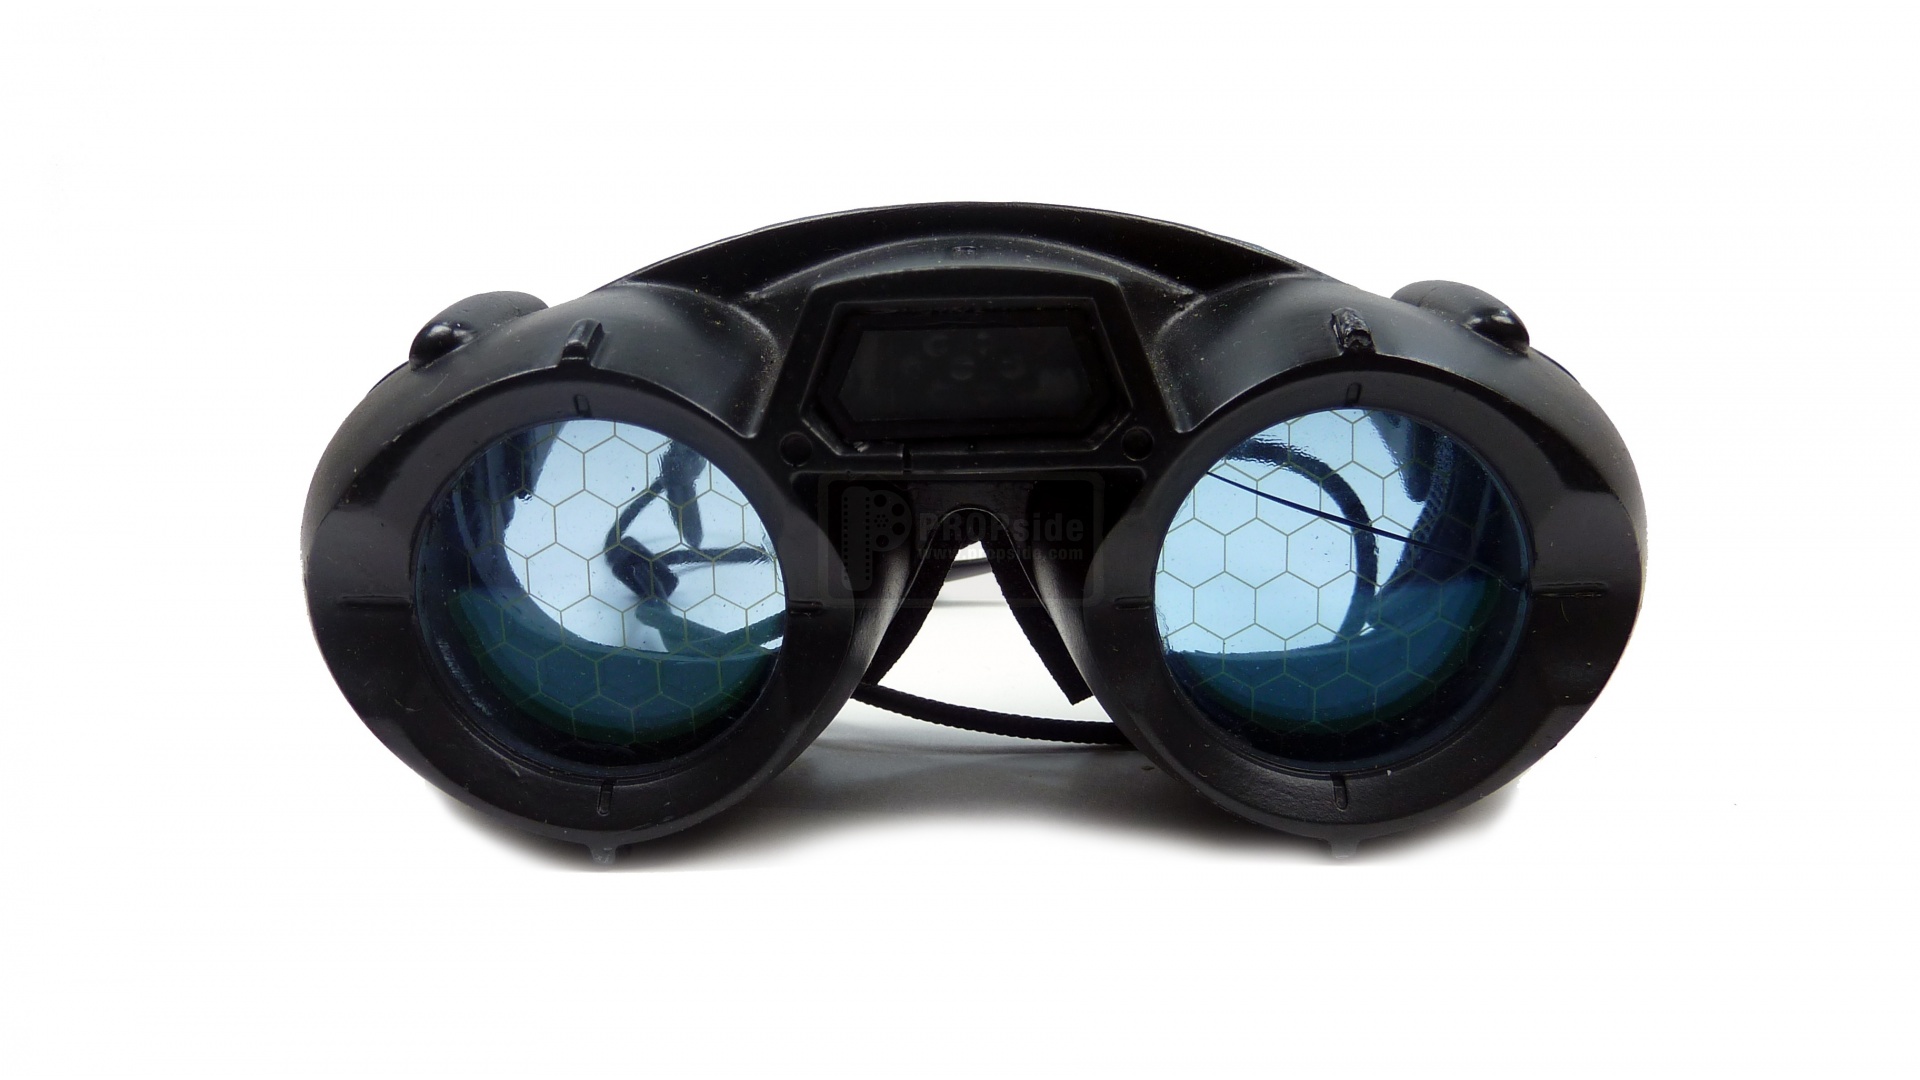 Gafas de visión nocturna – Visión Nocturna y Térmica